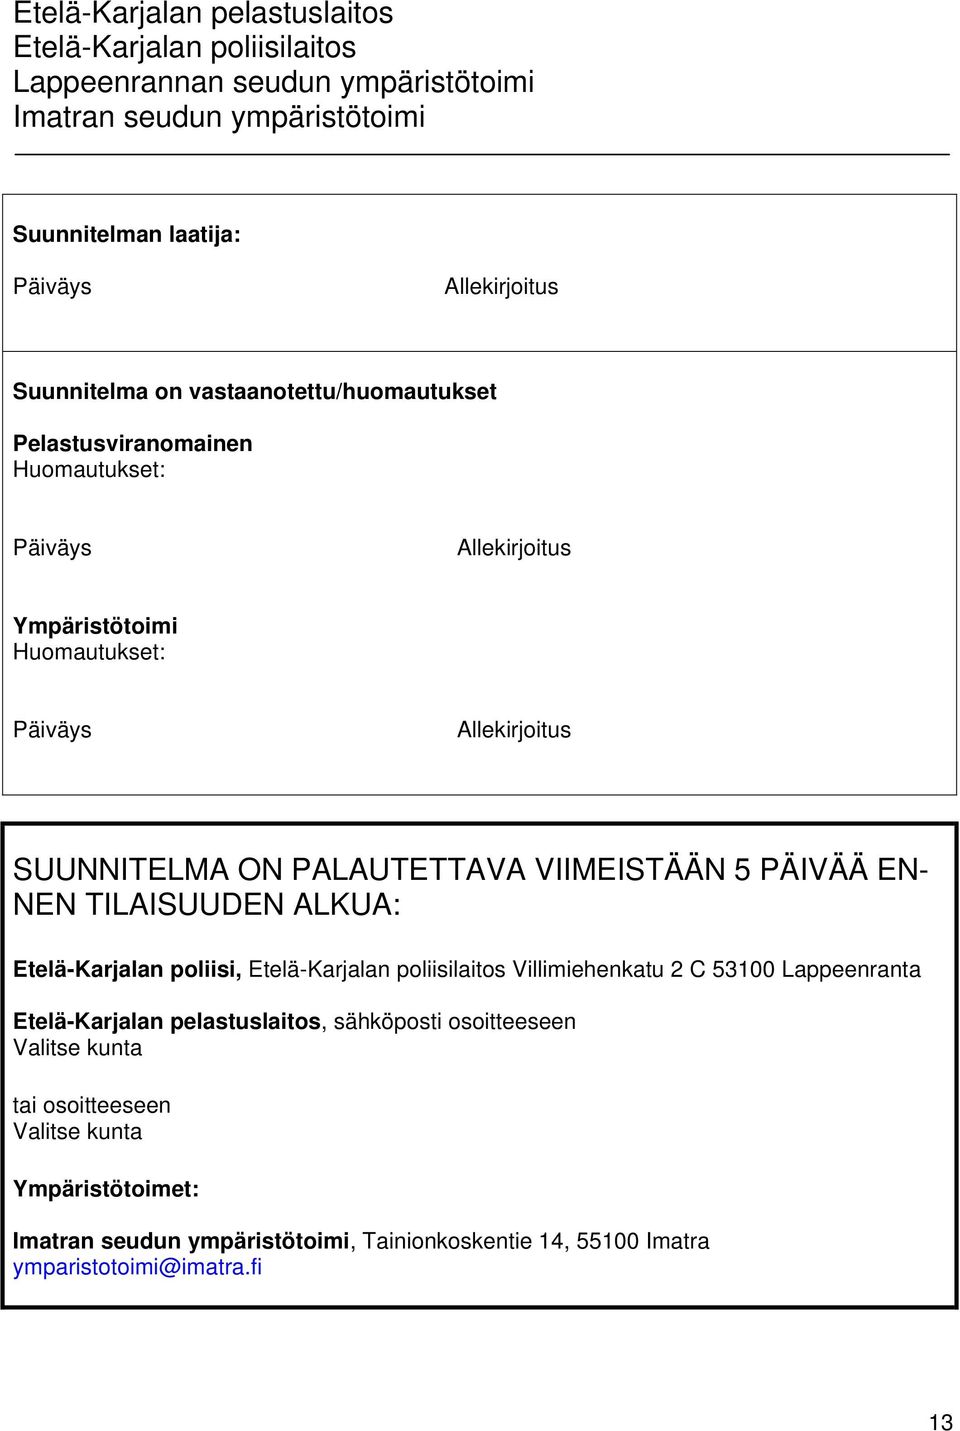 NEN TILAISUUDEN ALKUA: Etelä-Karjalan poliisi, Villimiehenkatu 2 C 53100 Lappeenranta Etelä-Karjalan pelastuslaitos, sähköposti